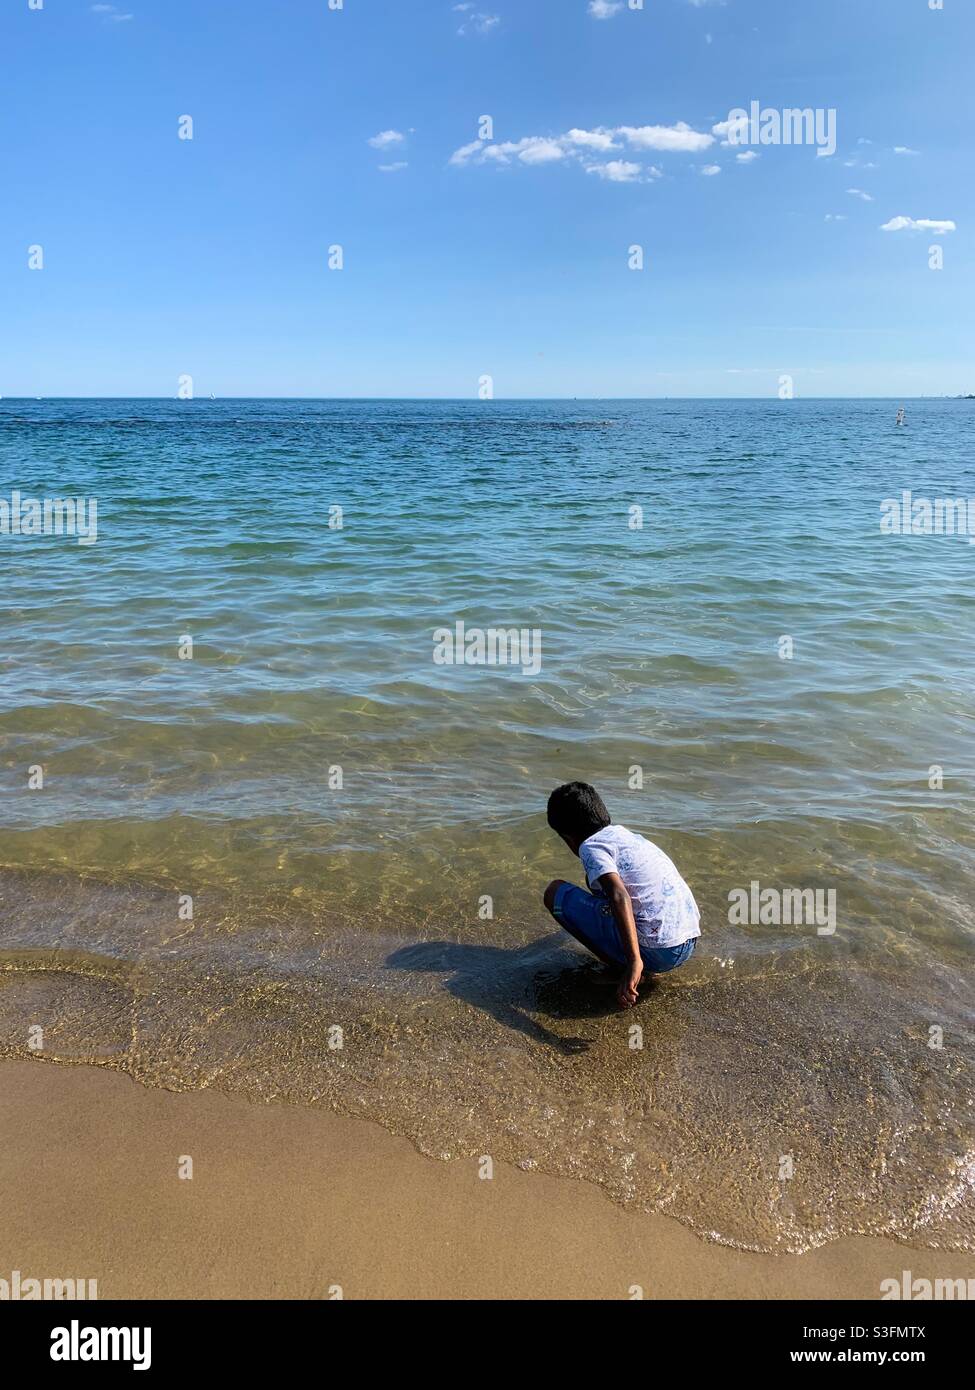 Un chico del sur de Asia jugando en la orilla del lago en Toronto Foto de stock